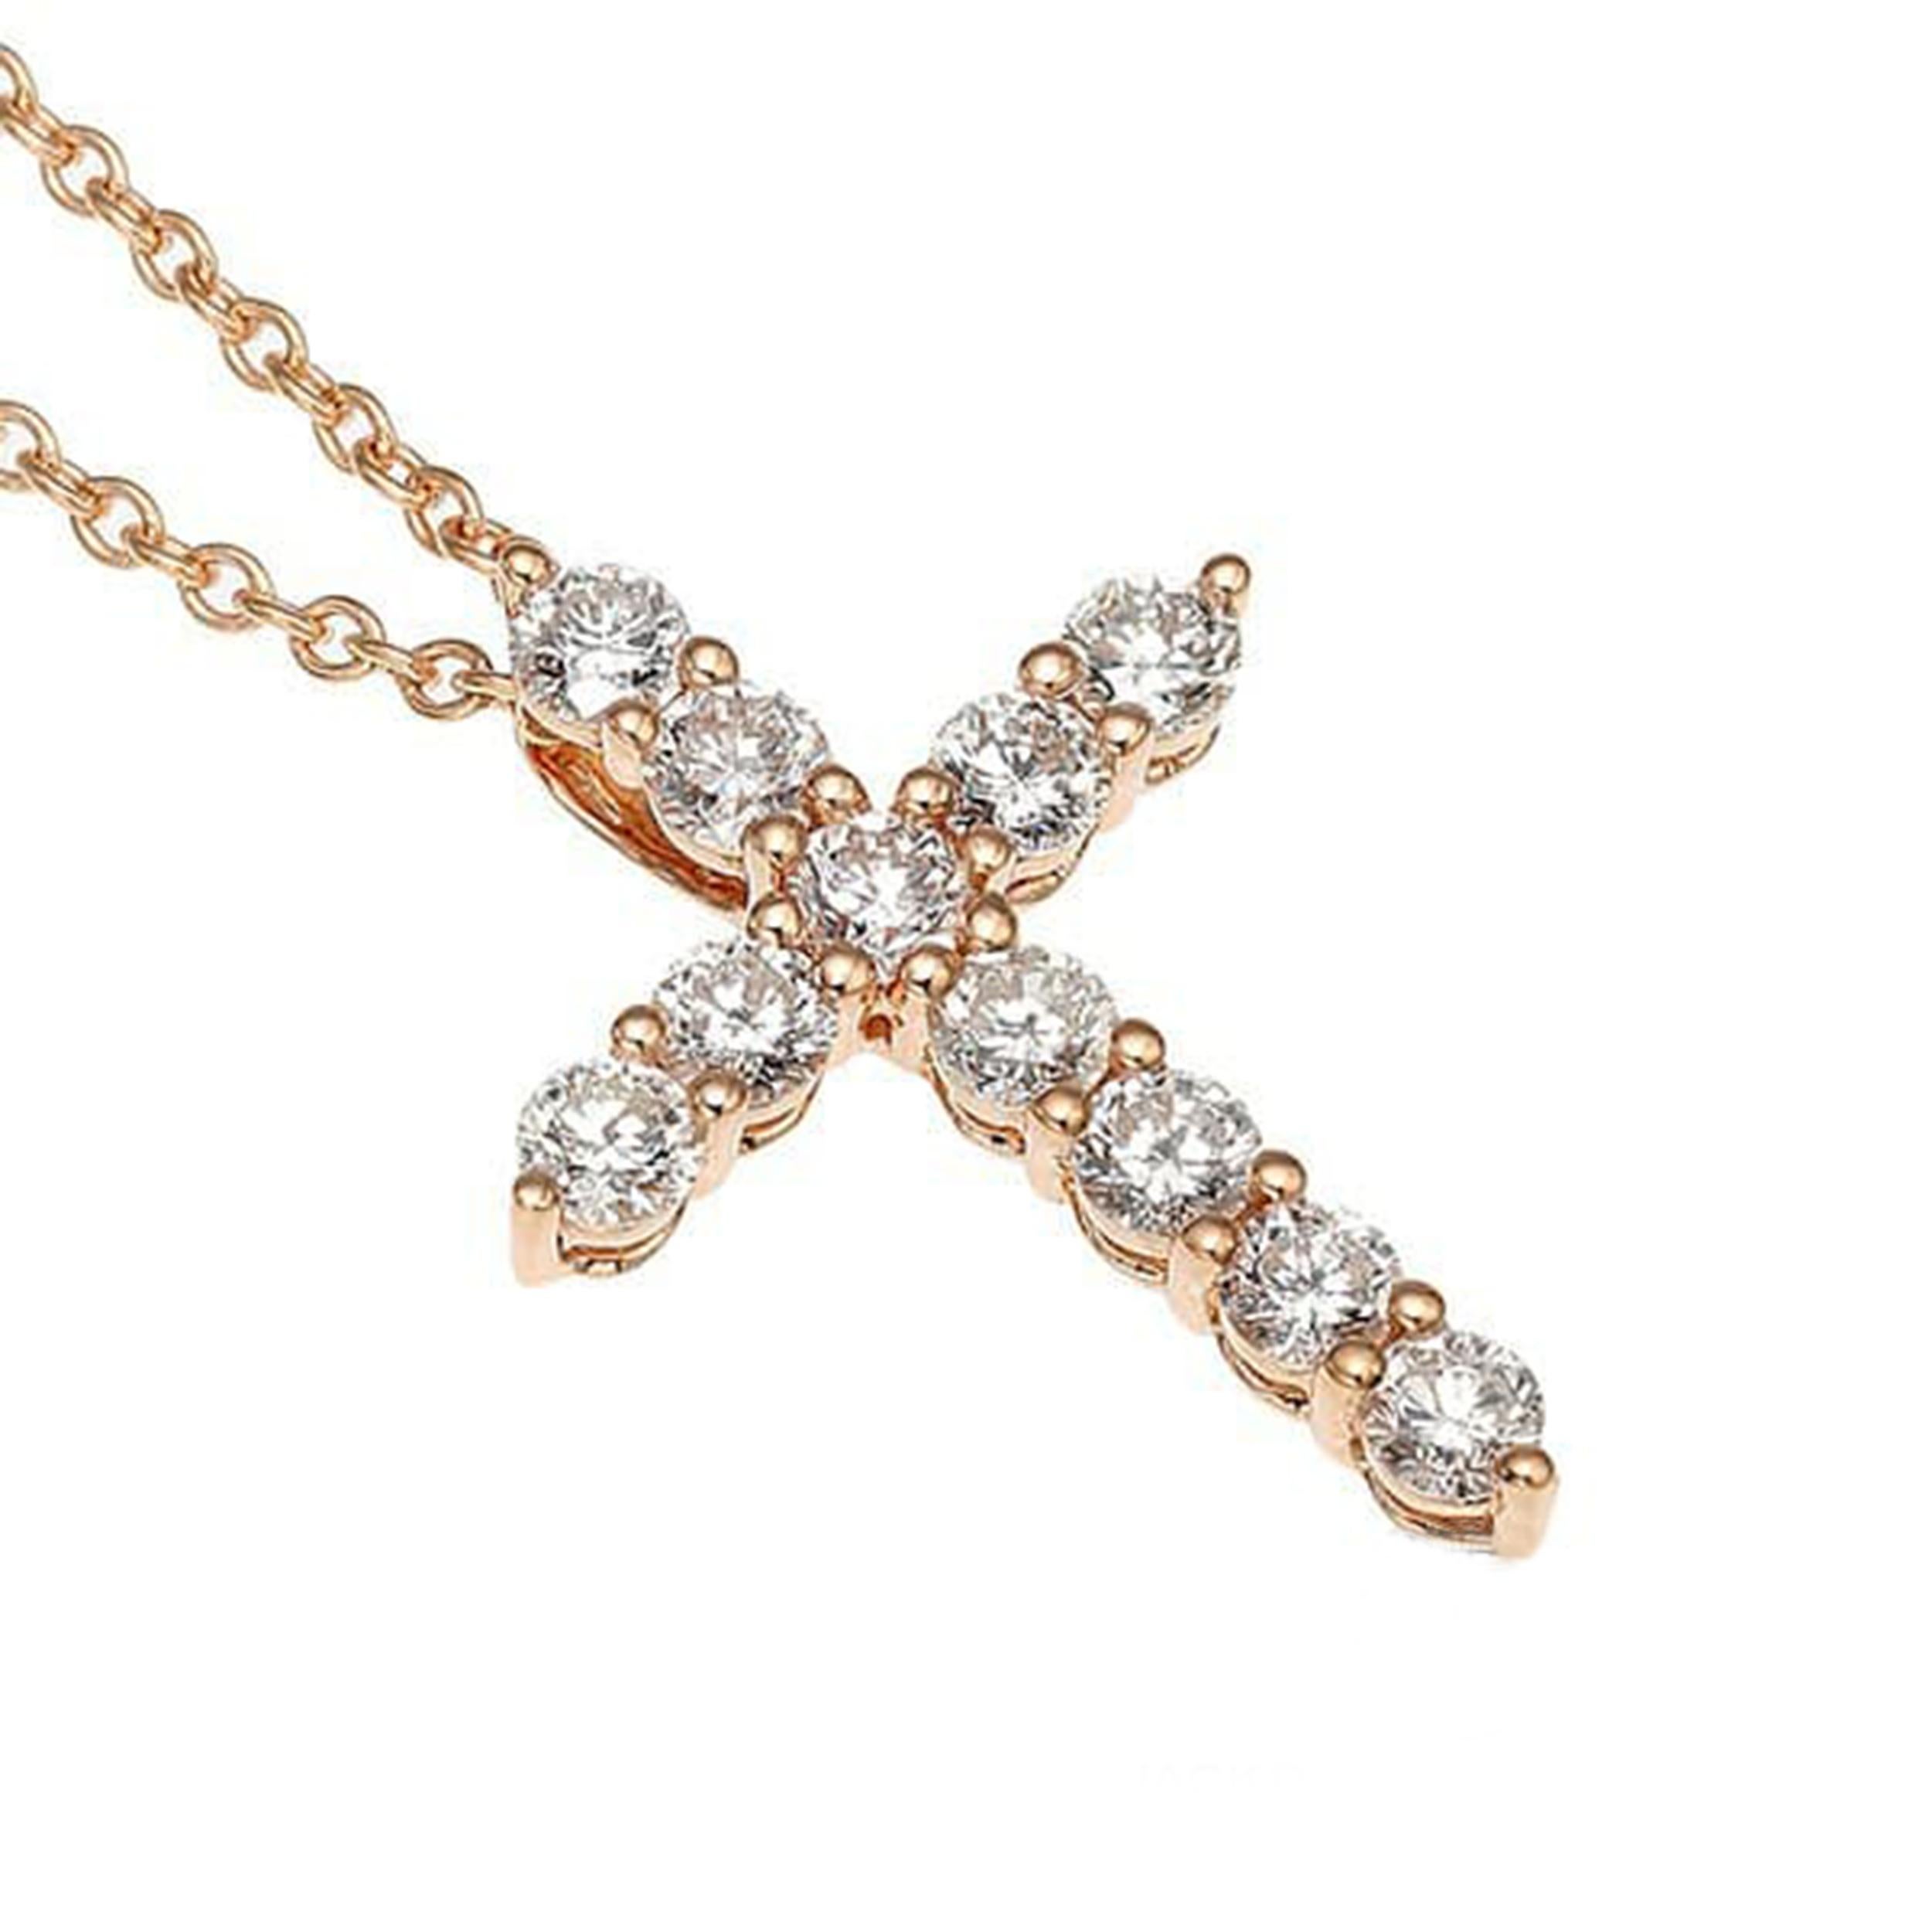 Erhöhen Sie Ihren Stil mit dieser atemberaubenden Kreuz-Halskette mit Diamanten aus 18 Karat Roségold. Dieses mit Präzision und Eleganz gefertigte Stück mit einem Gesamtgewicht von 0,56 Karat verleiht jedem Ensemble Glanz und